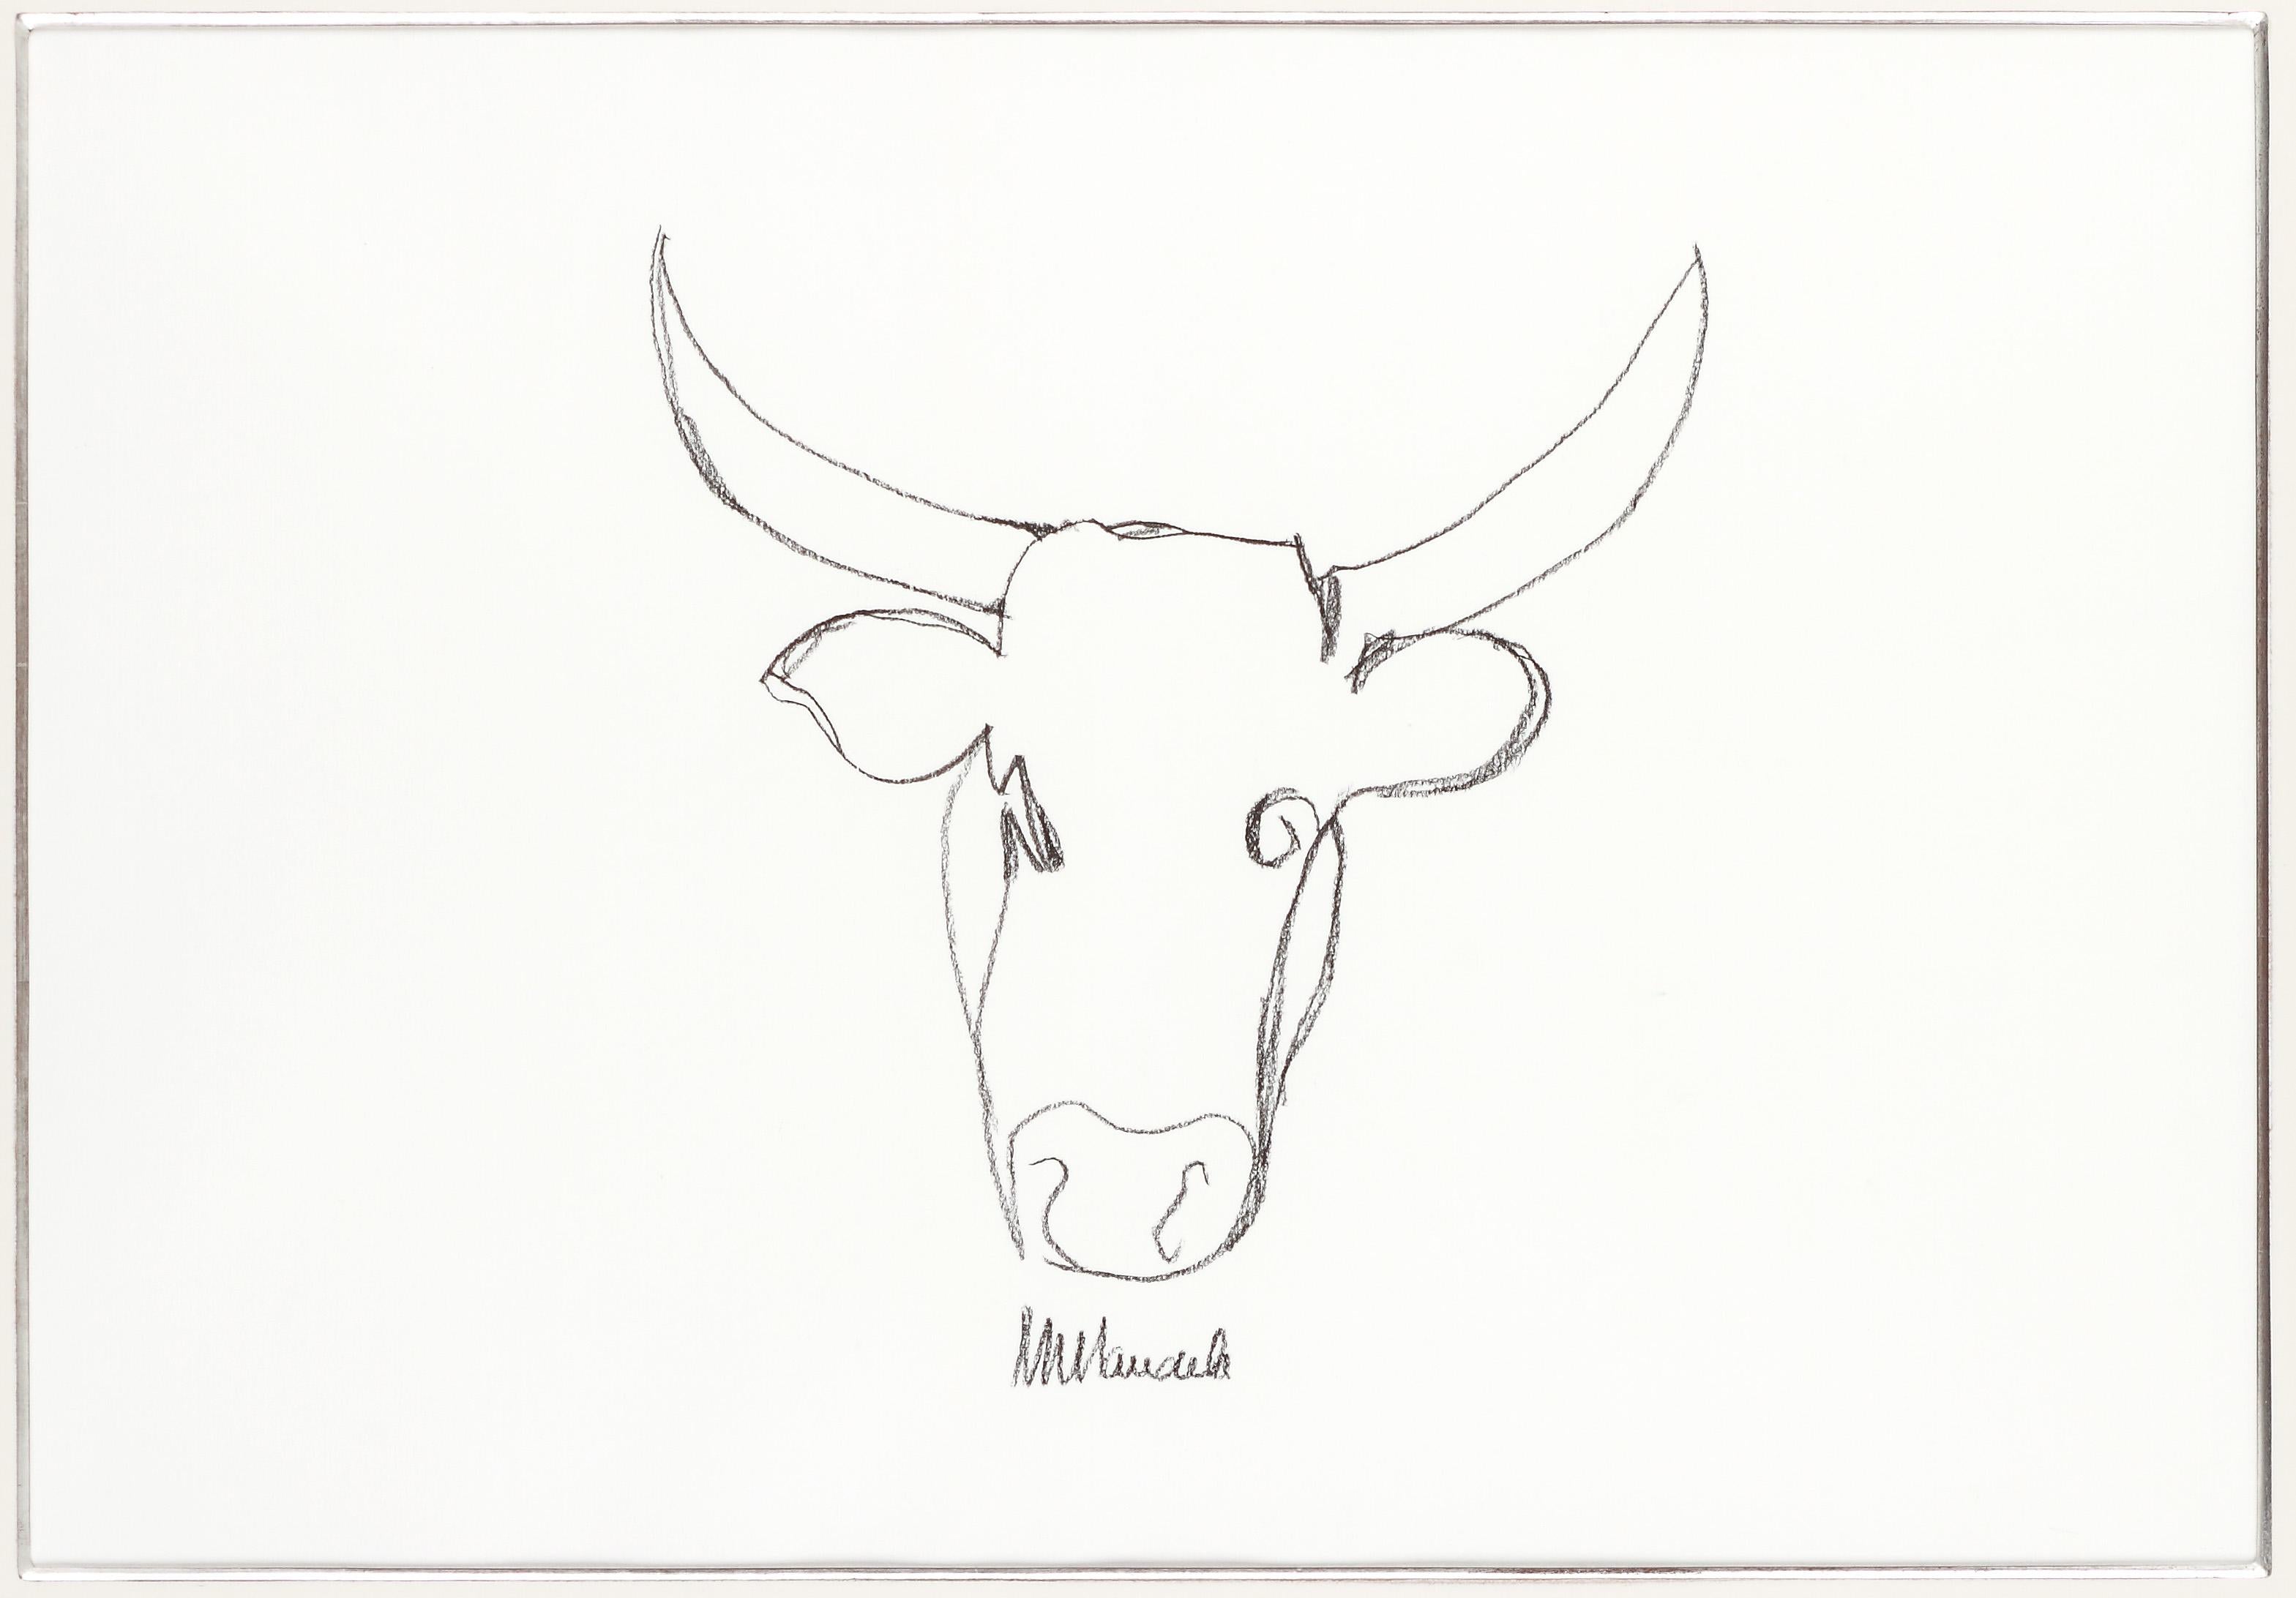 easy sketch of nelson mandela